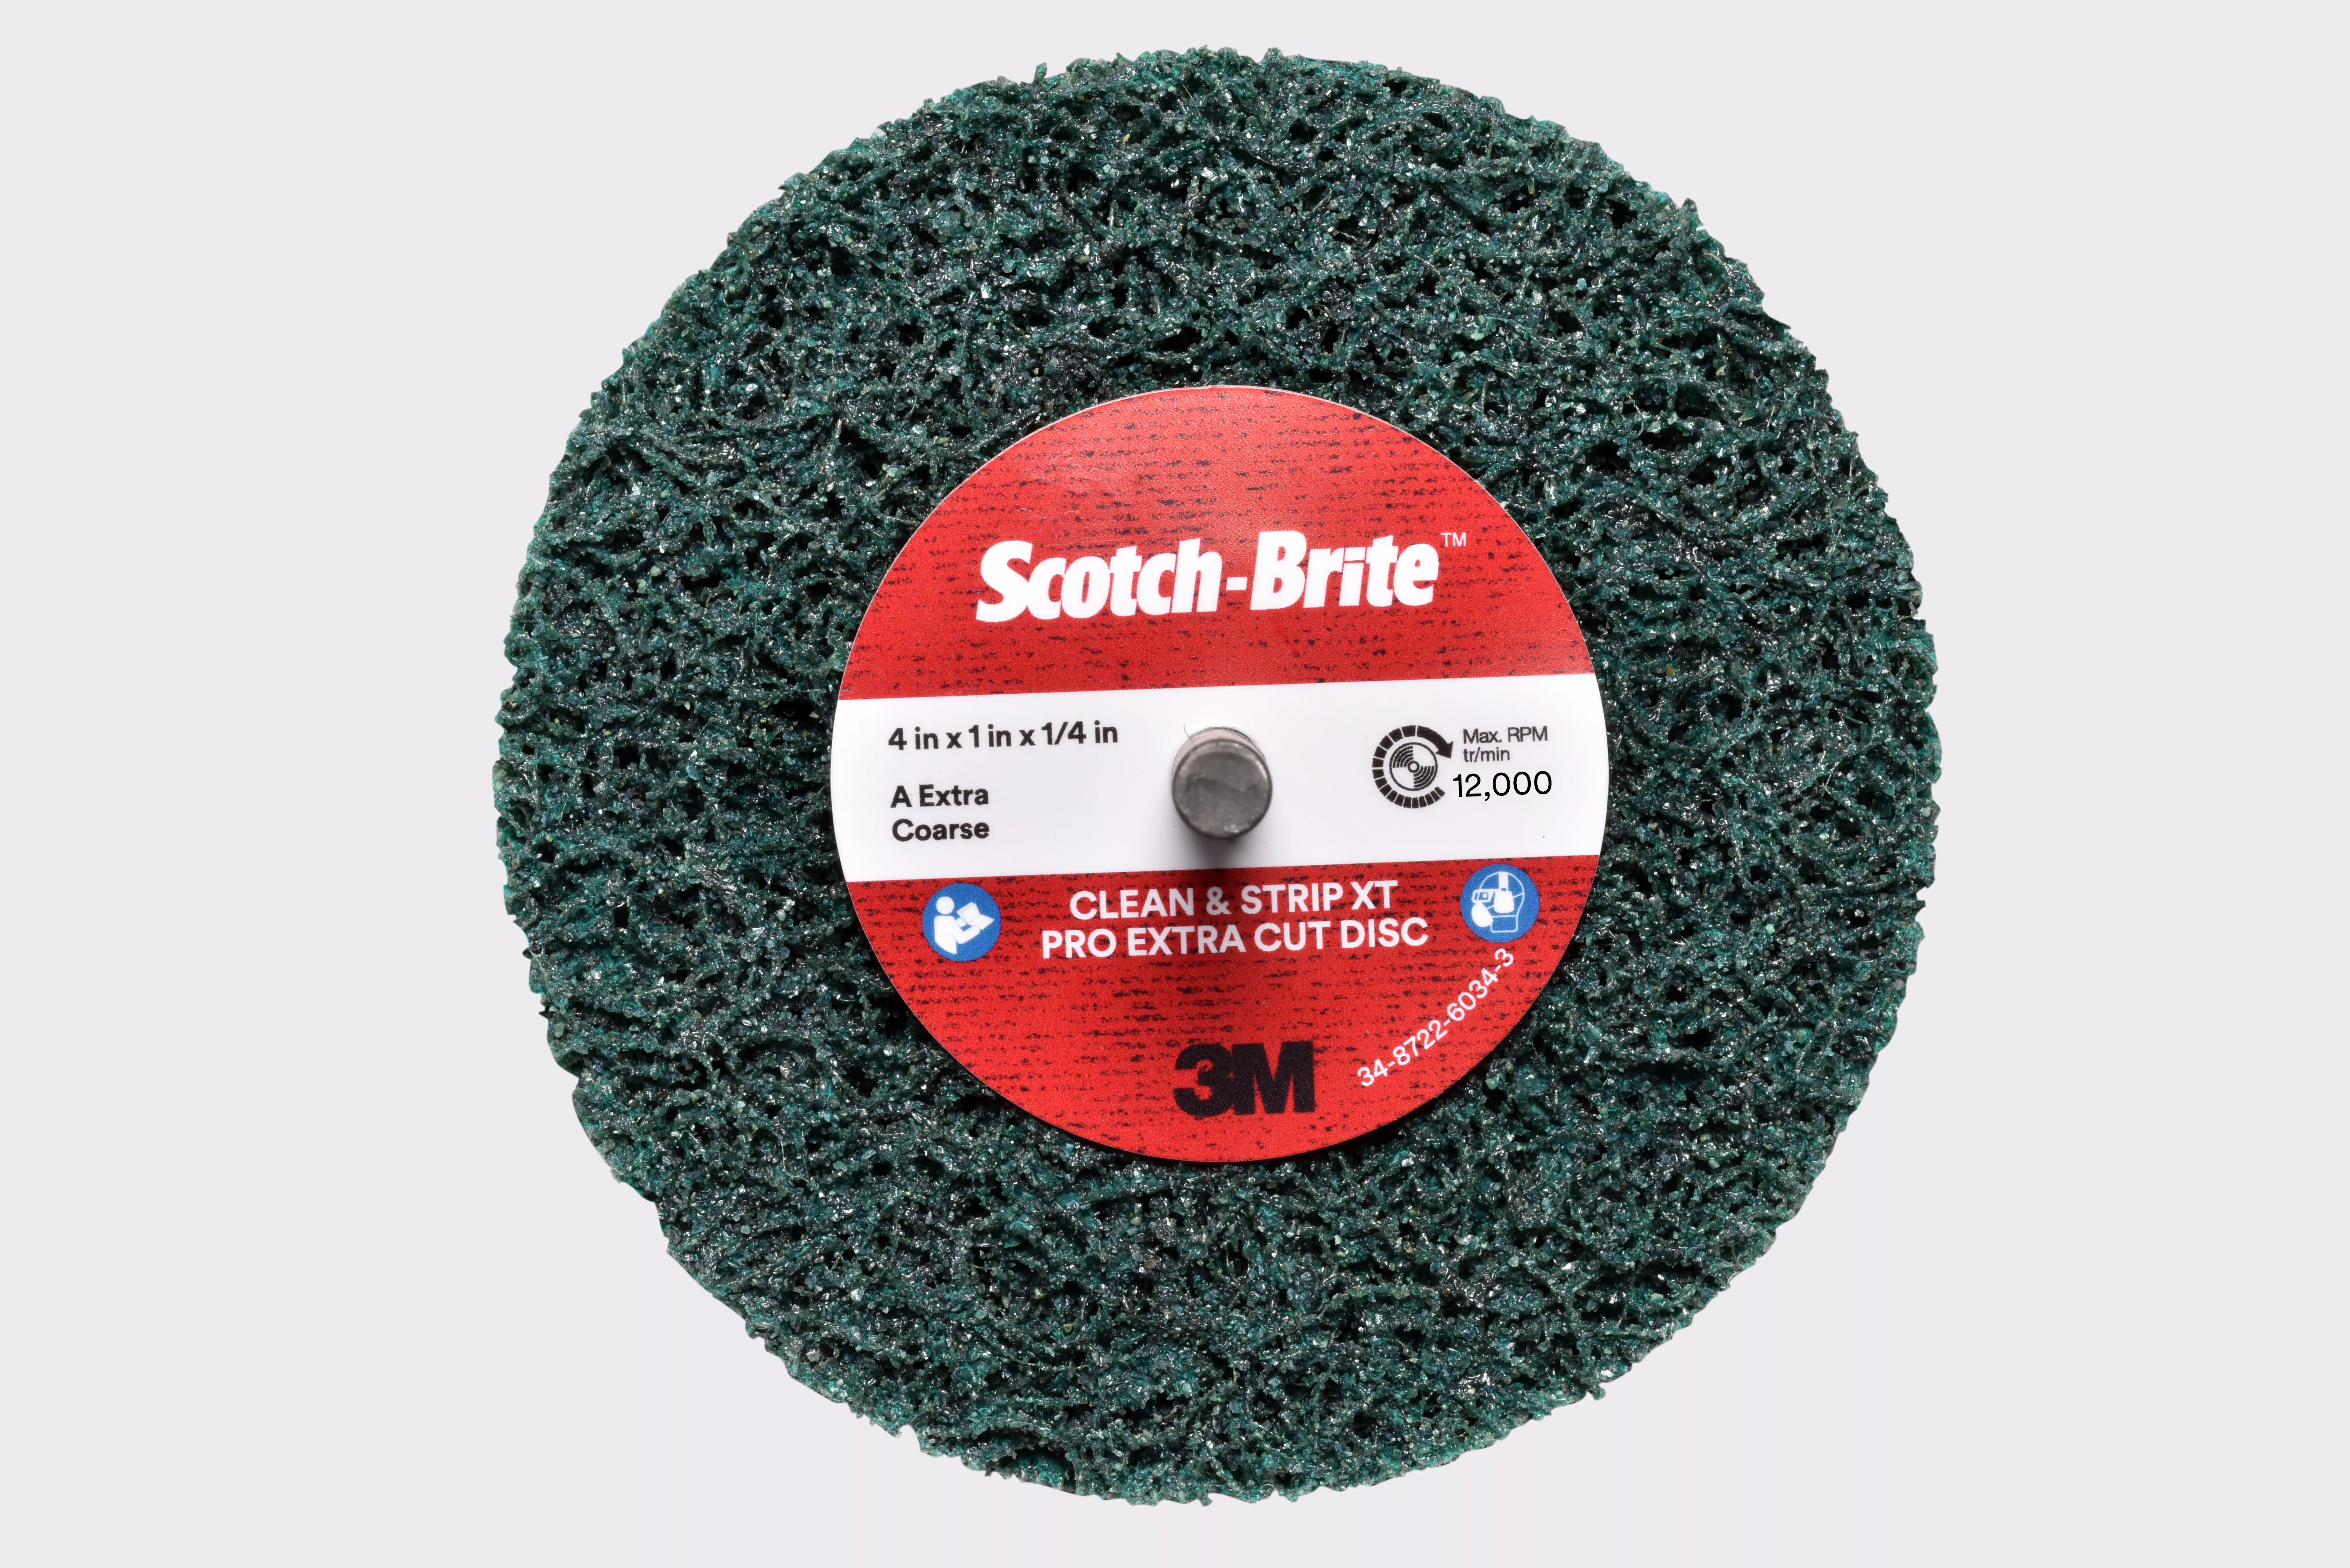 Scotch-Brite™ Clean and Strip XT Pro Extra Cut Disc, XC-DC, A/O XCRS,
Green, 4 in x 1 in x 1/4 in, 2 Ply Shaft Mount, 10 ea/Case